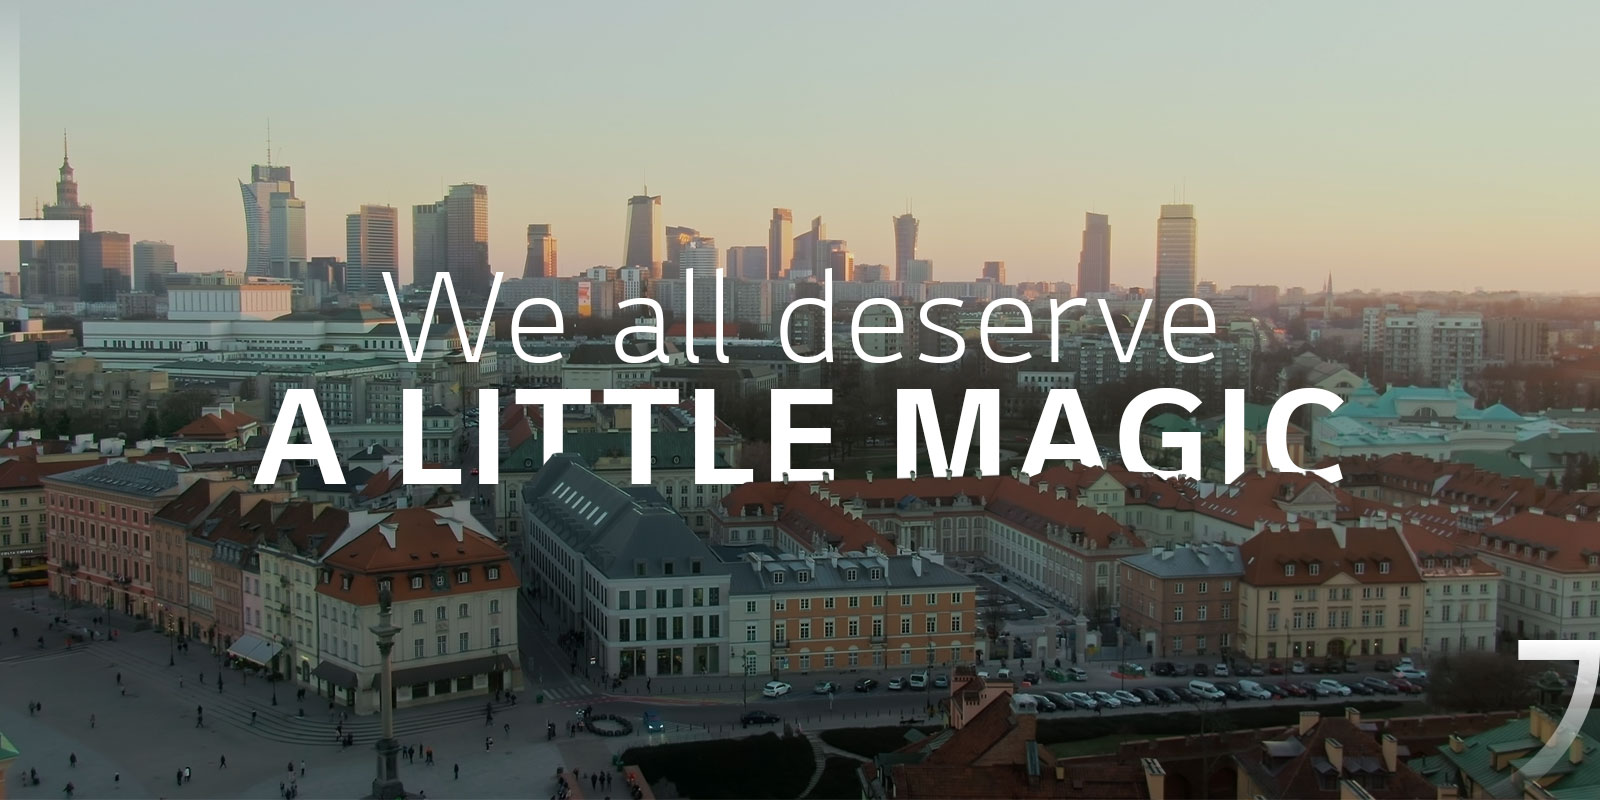 LG-A_Little_Magic-website-1600x800